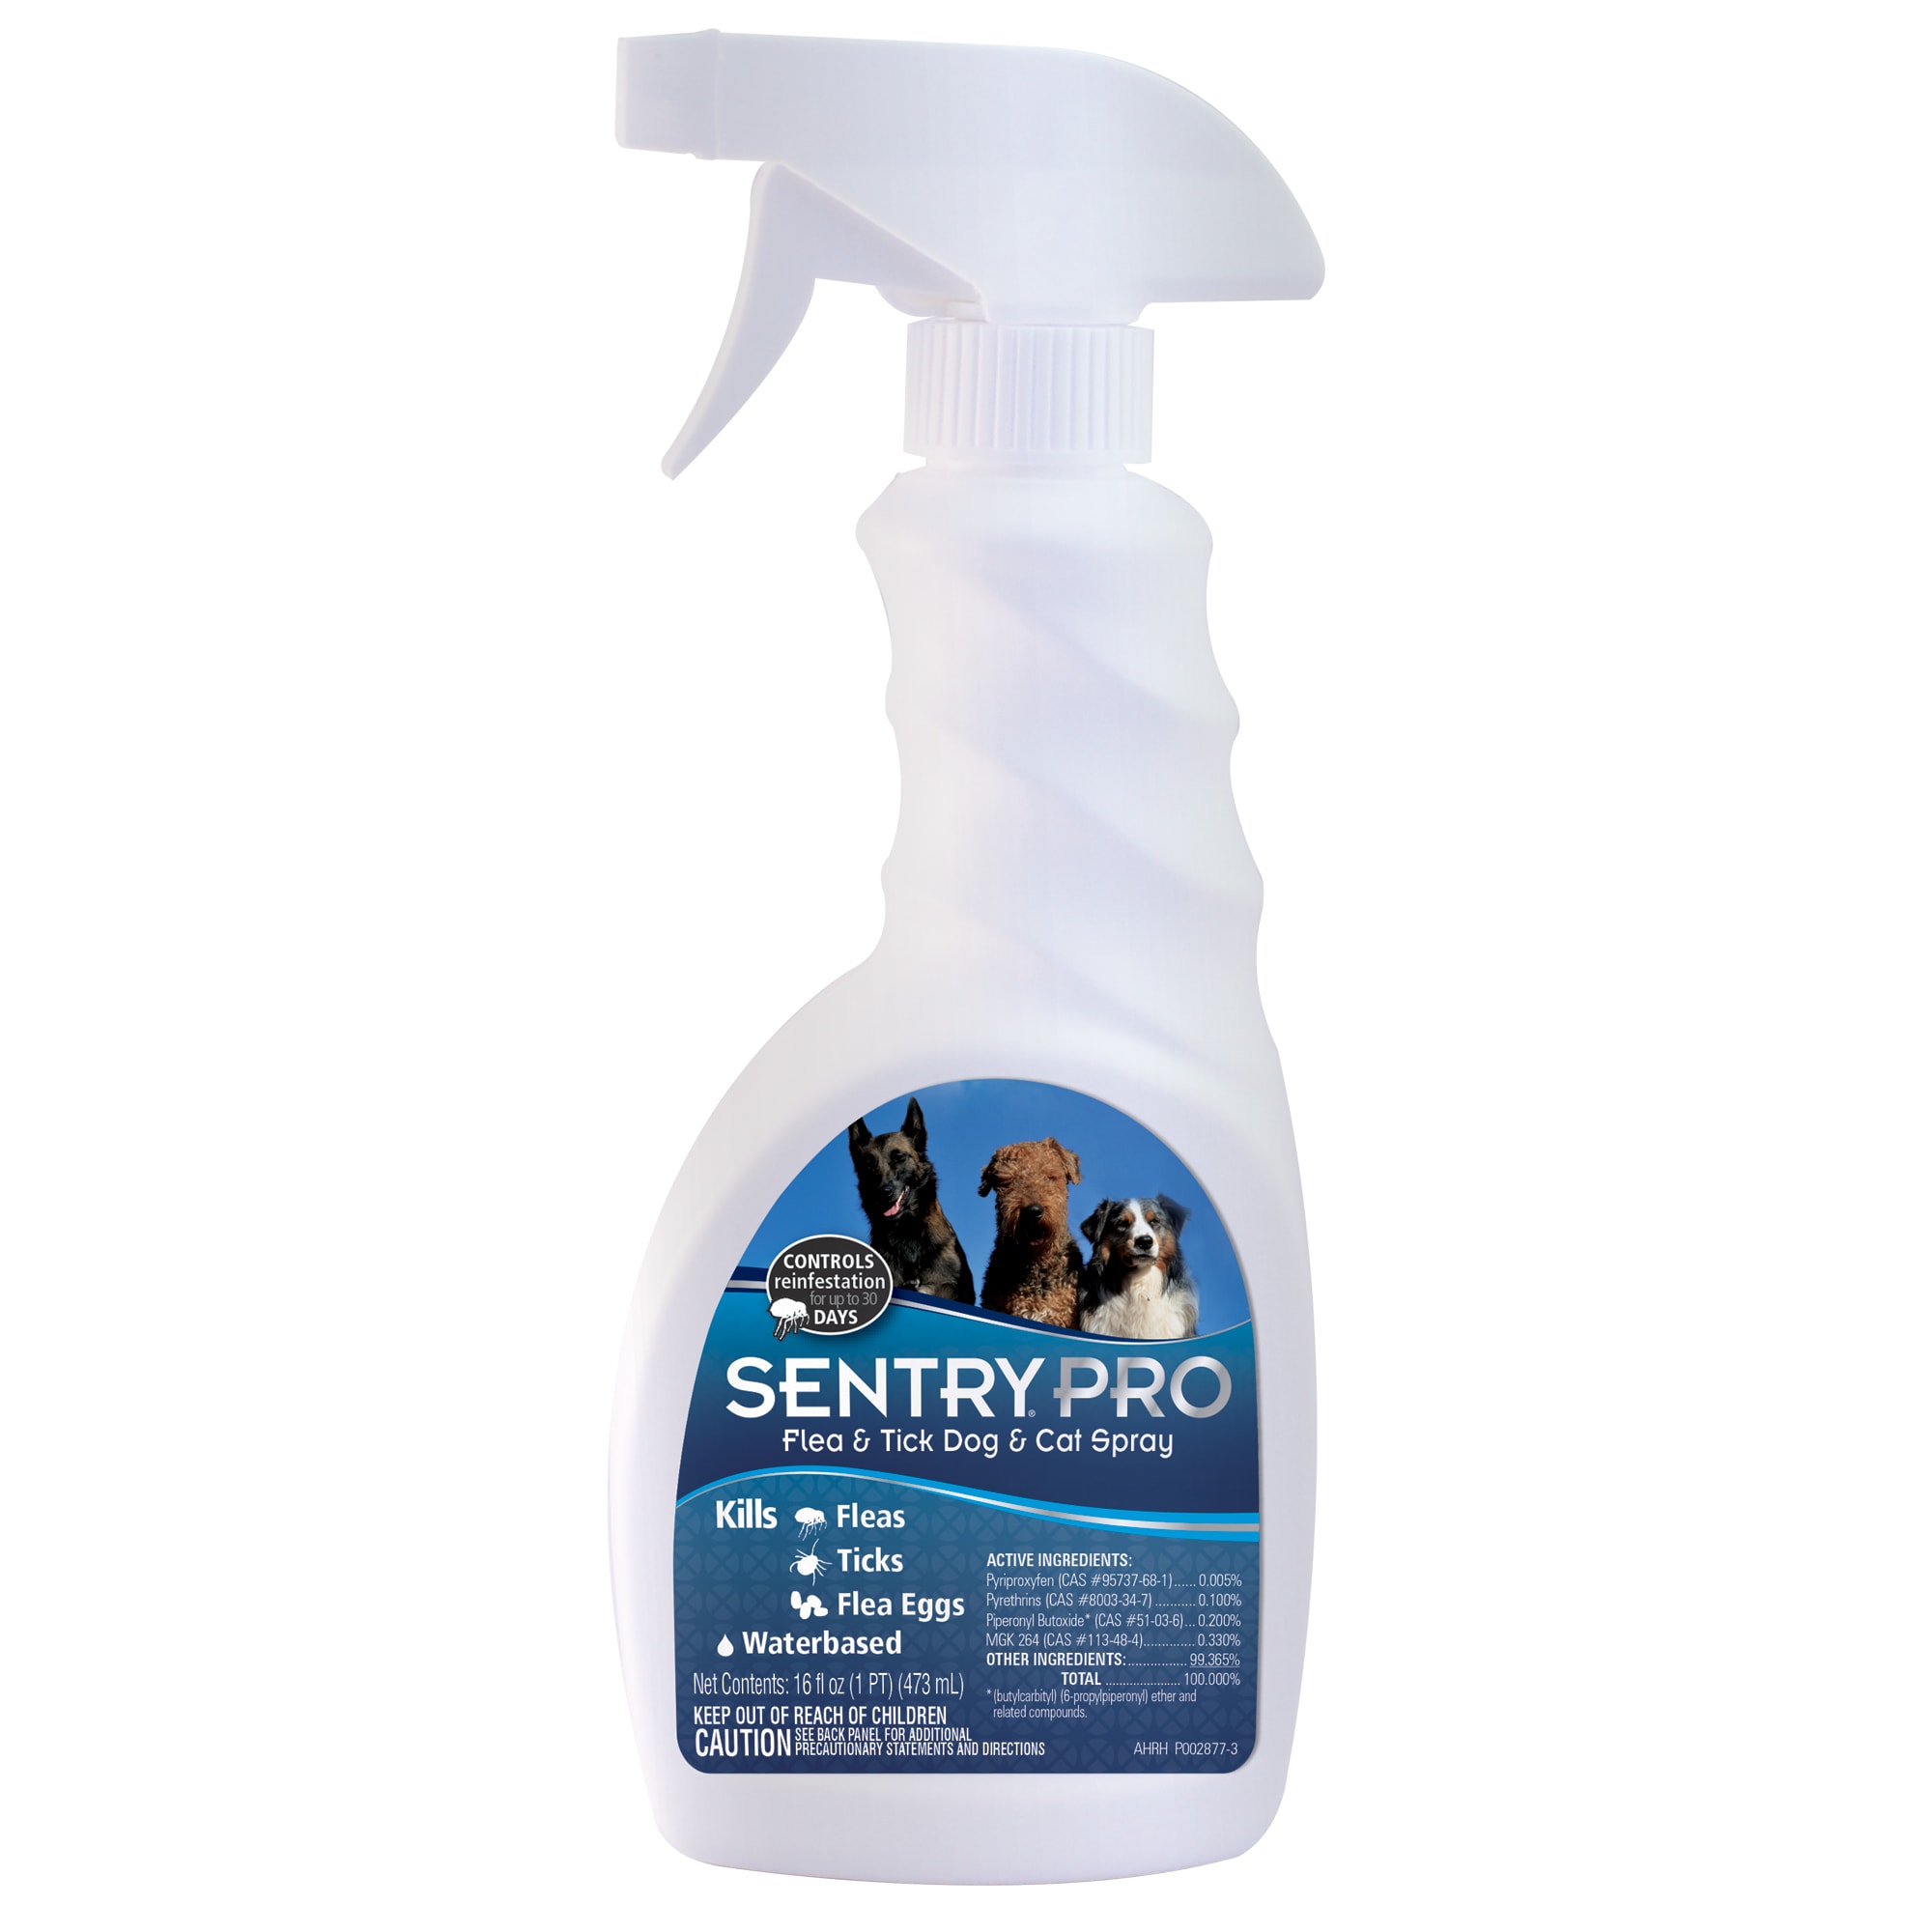 sentry cat spray